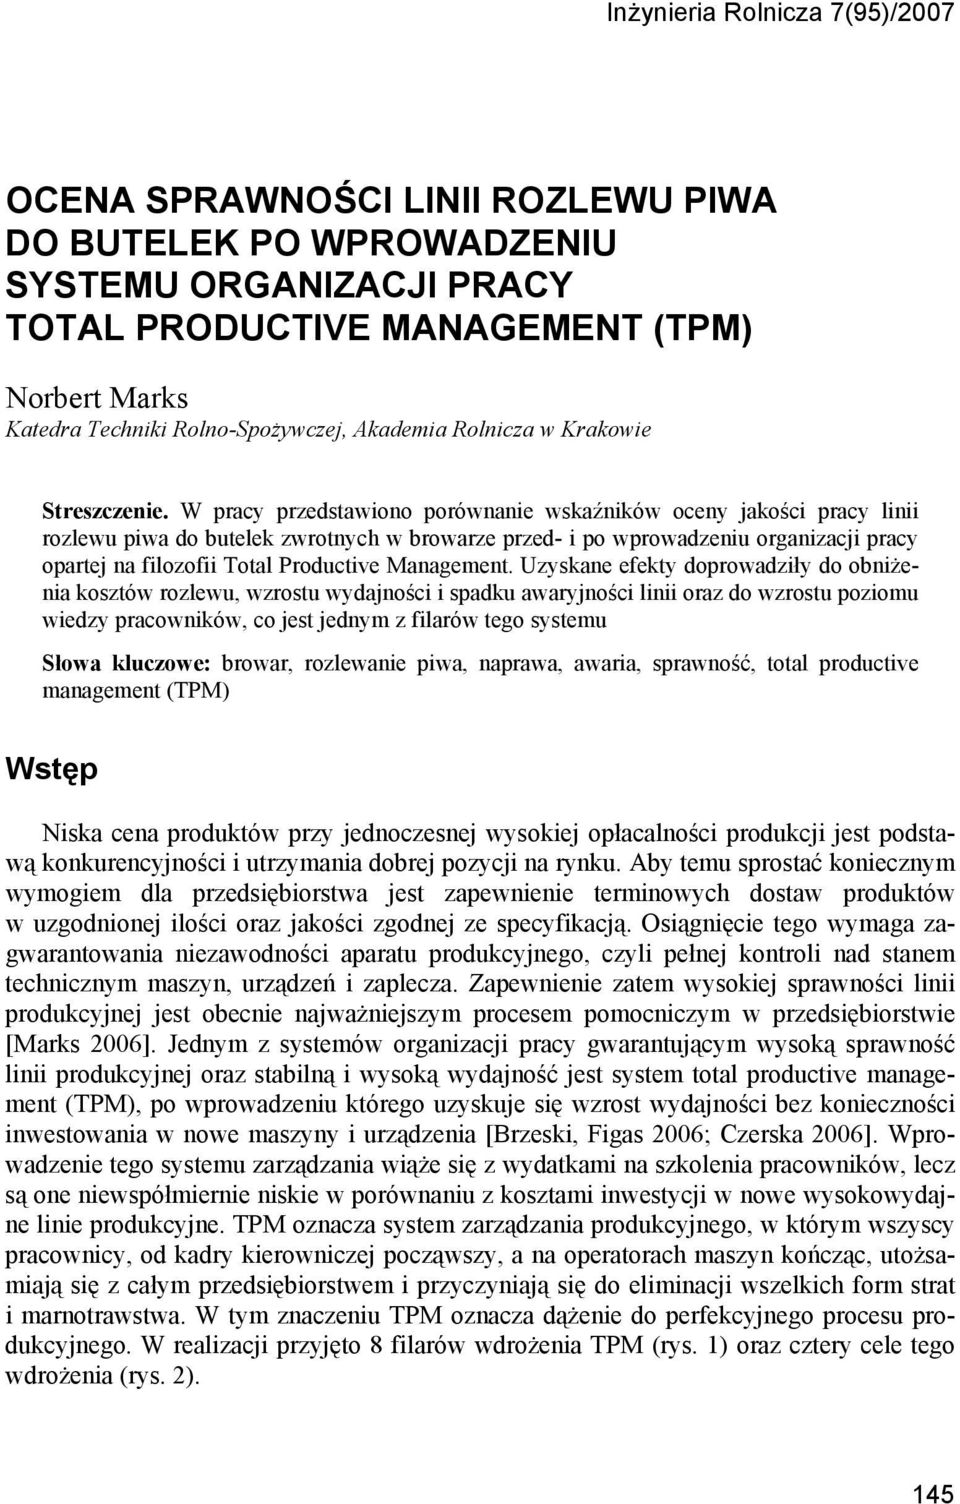 W pracy przedstawiono porównanie wskaźników oceny jakości pracy linii rozlewu piwa do zwrotnych w browarze przed- i po wprowadzeniu organizacji pracy opartej na filozofii Total Productive Management.